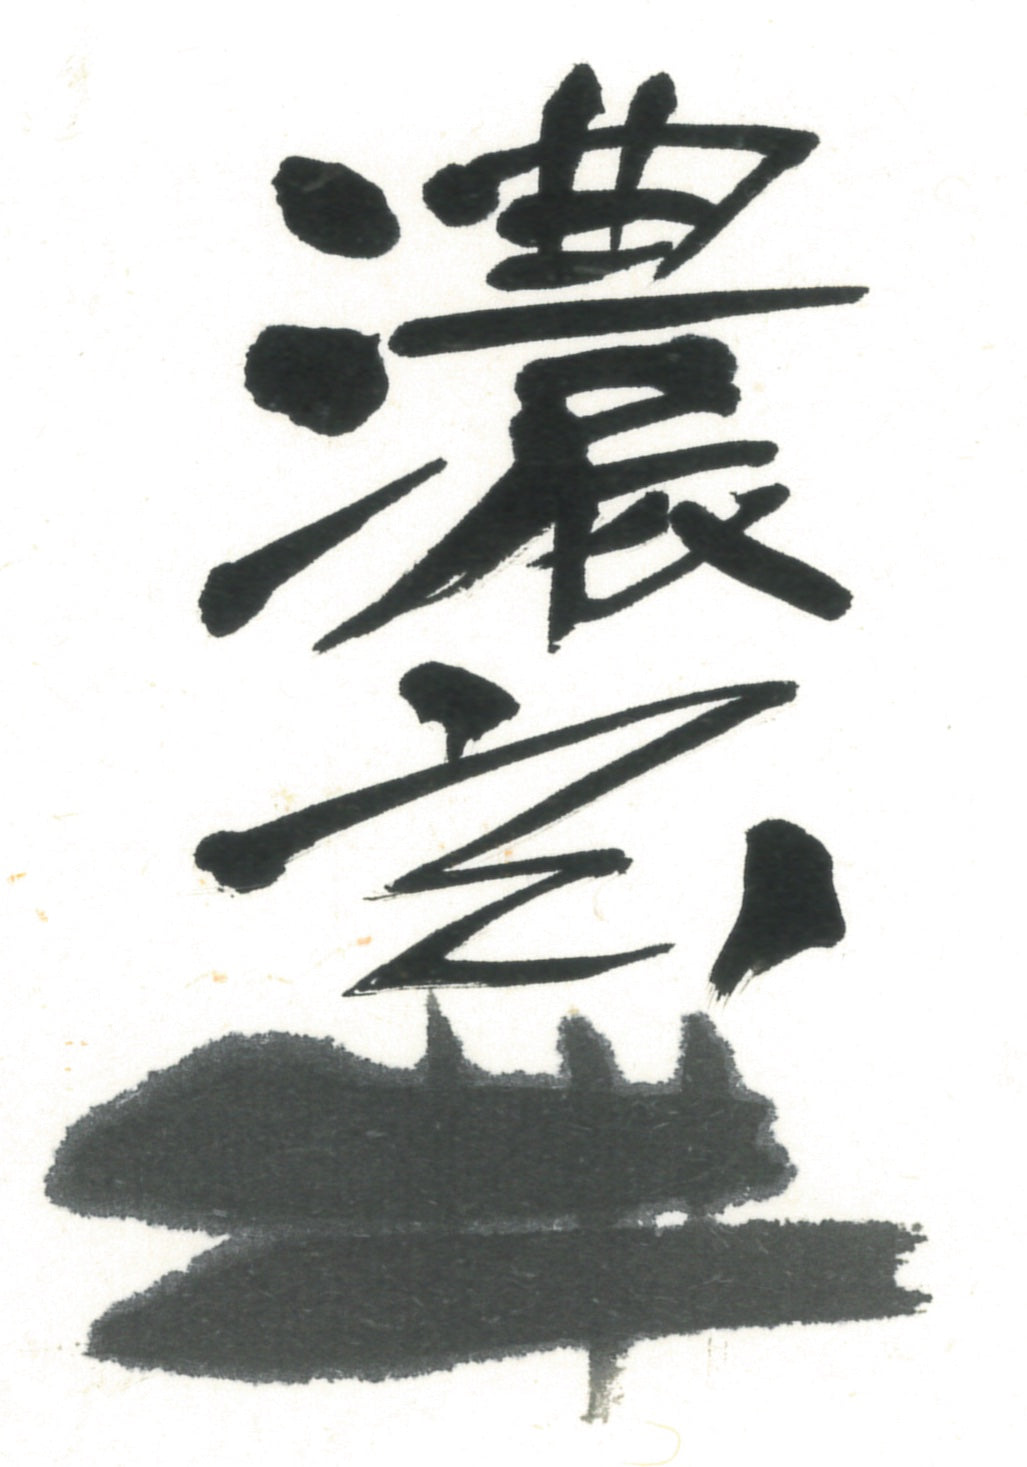 Gen ( Dark black,  For Regular works,  玄 濃墨 墨汁)   Sumi liquid ink